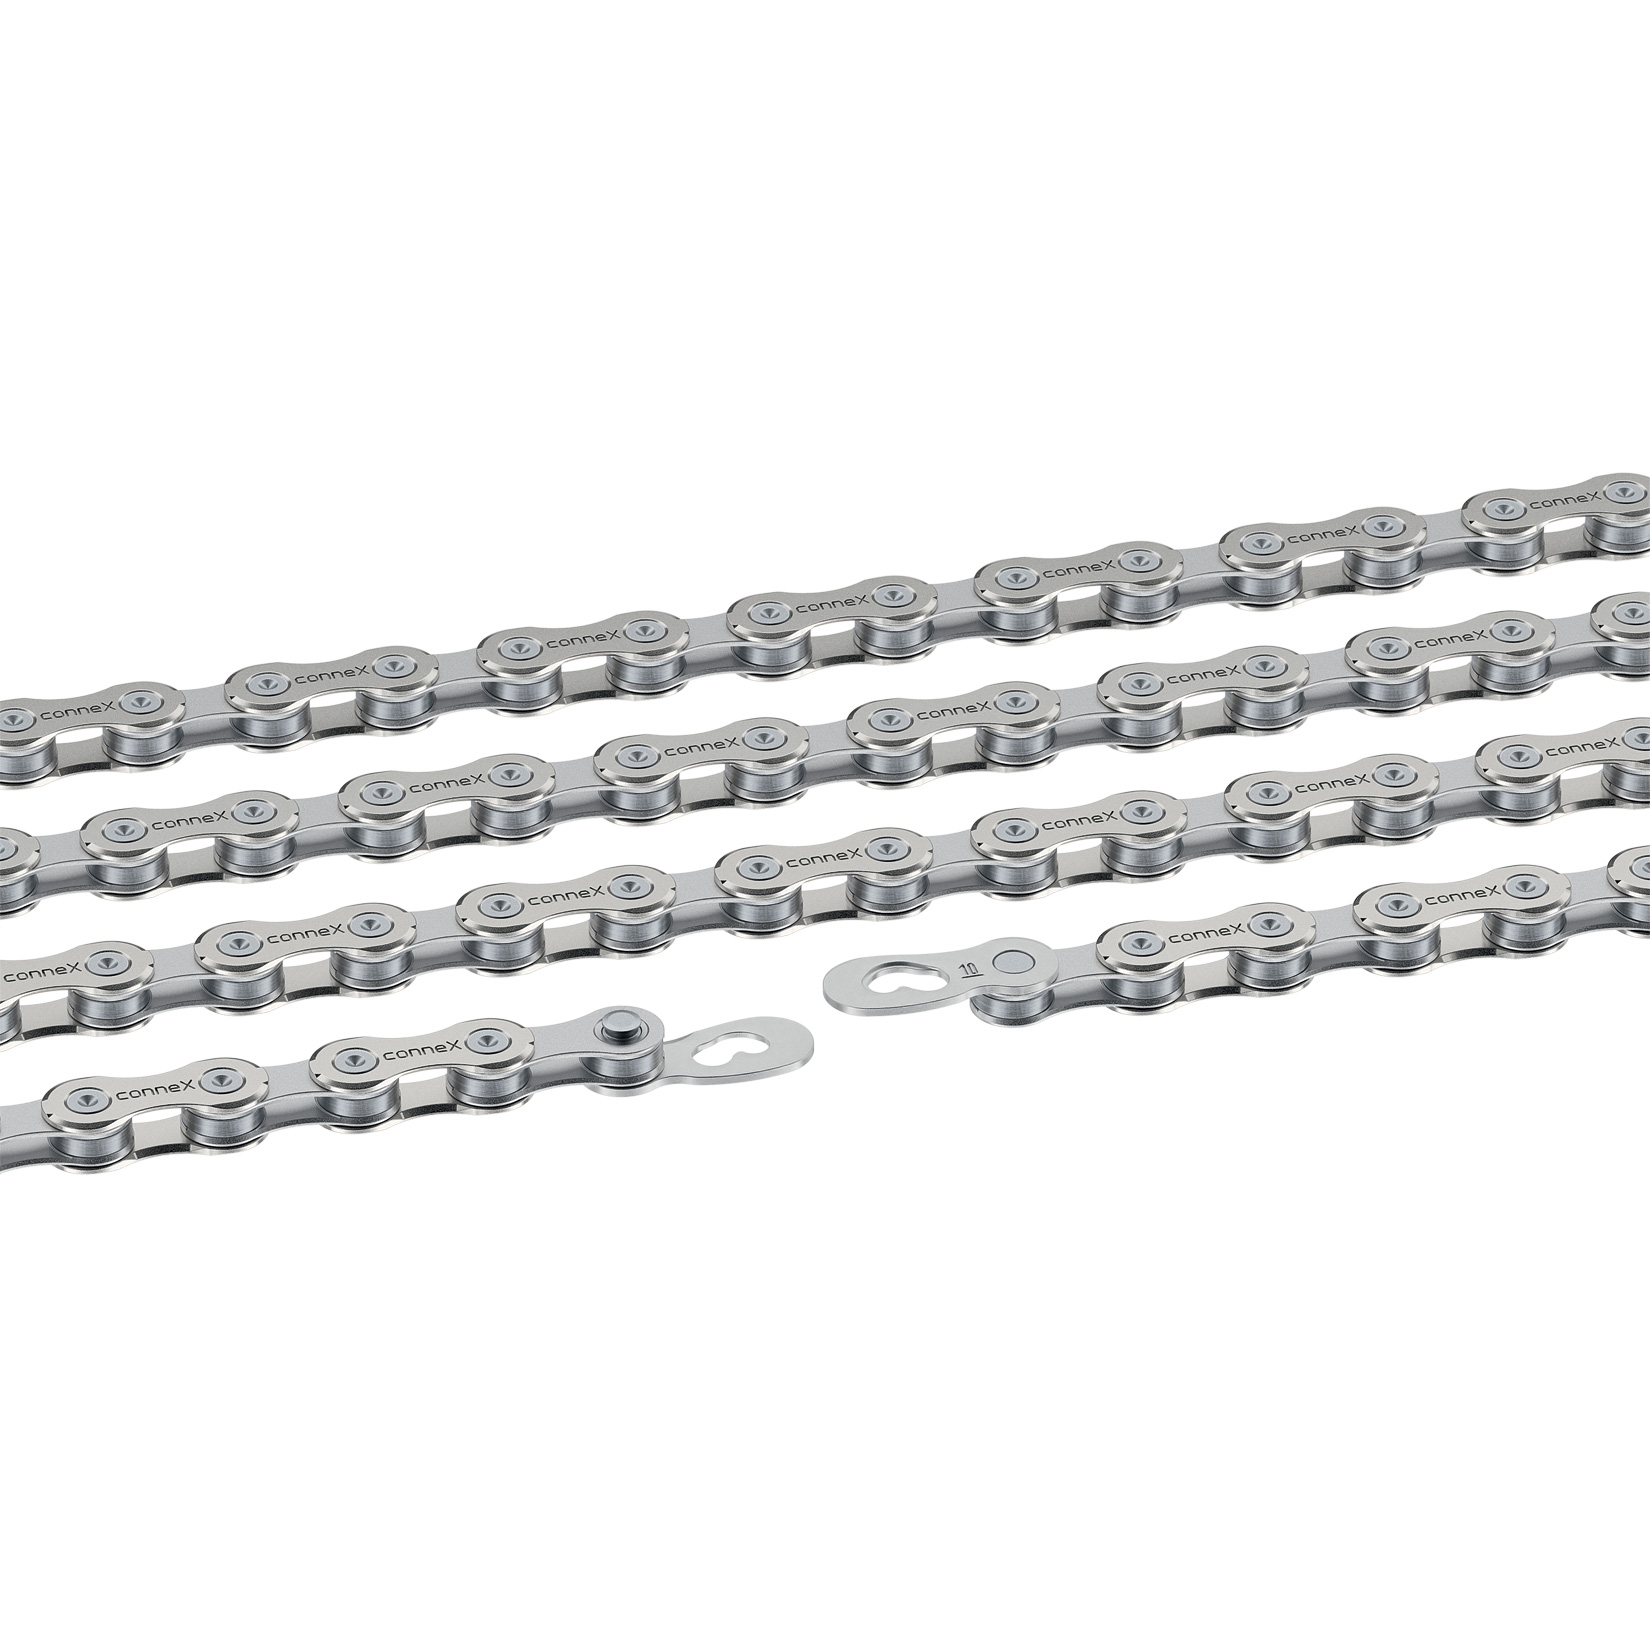 řetěz CONNEX 10sE pro E-BIKE 10-kolo, stříbrný